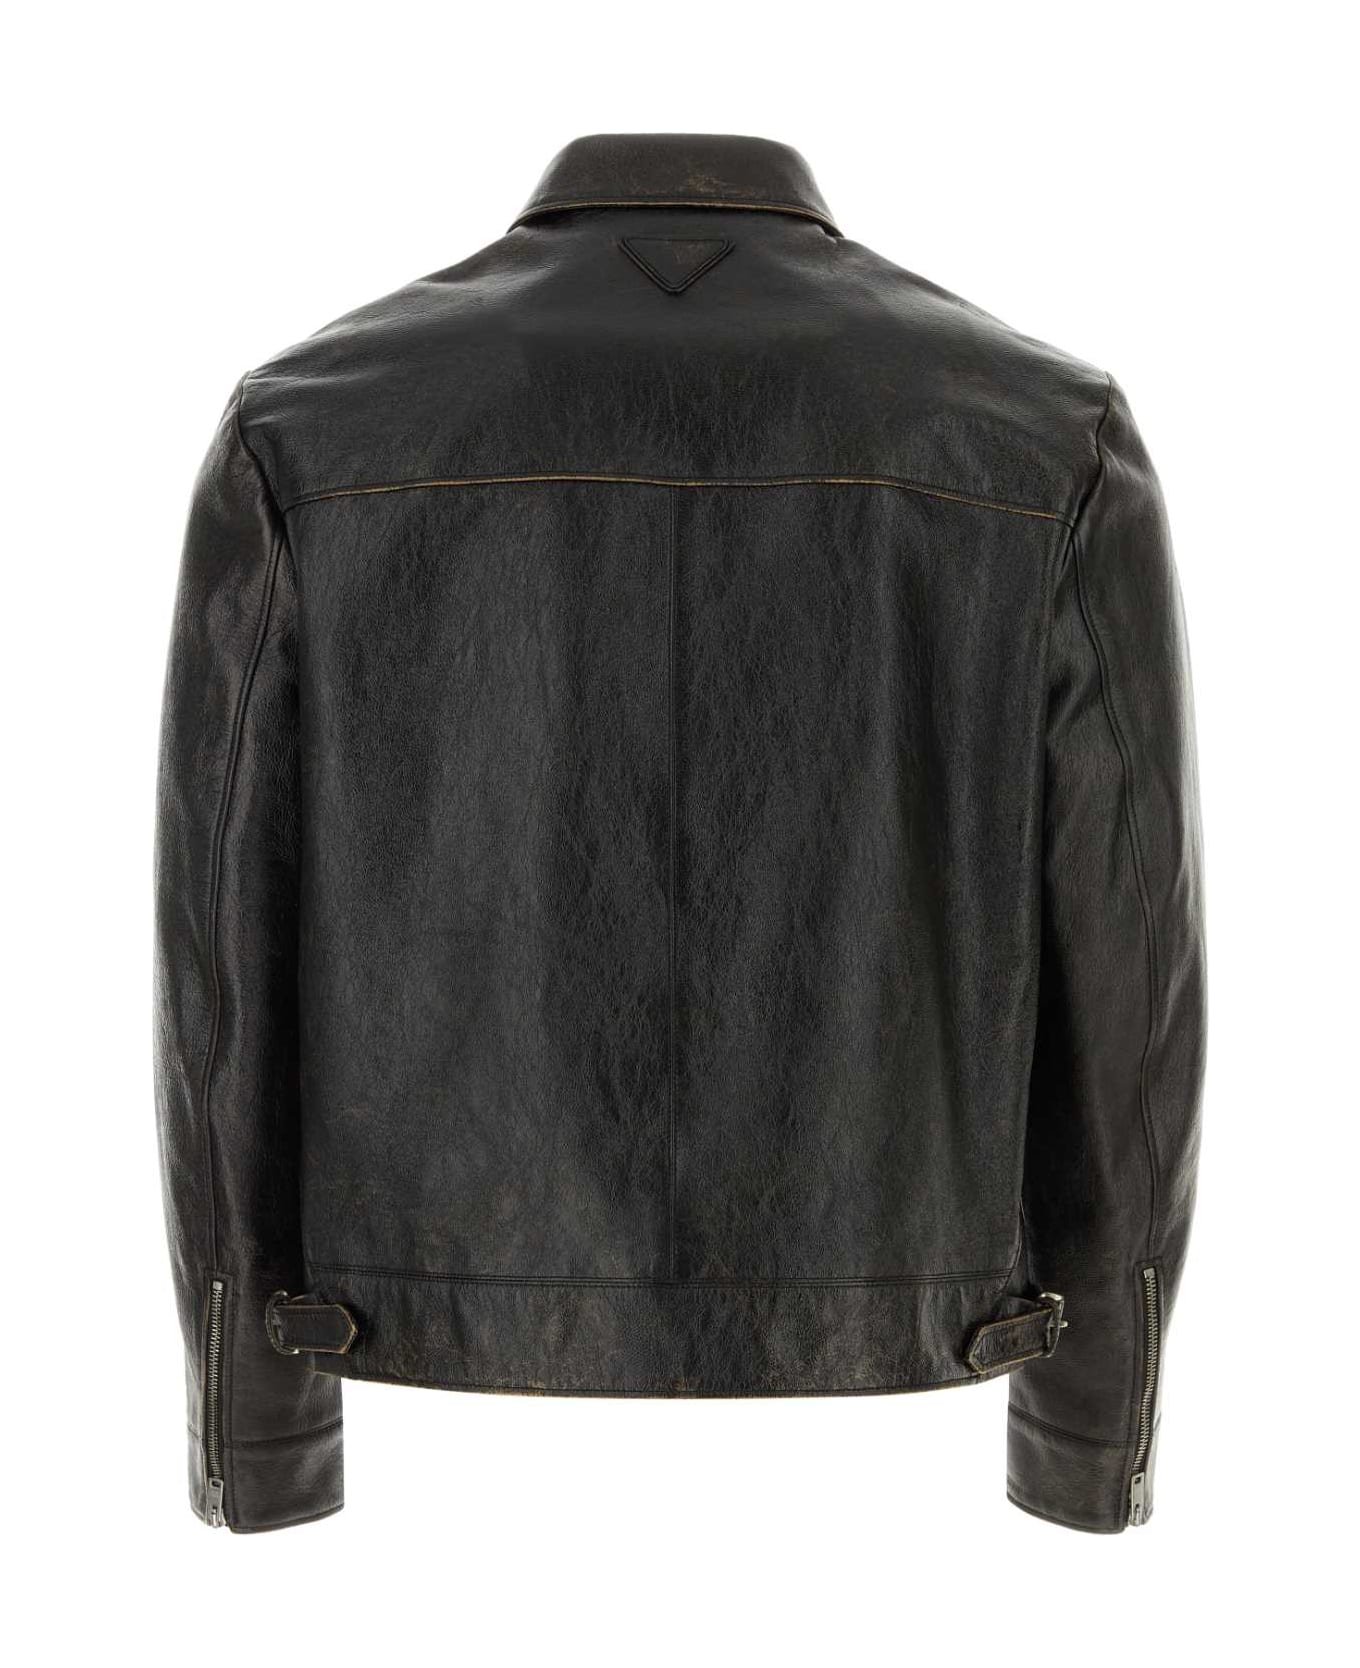 Prada Black Leather Jacket - NERO レザージャケット